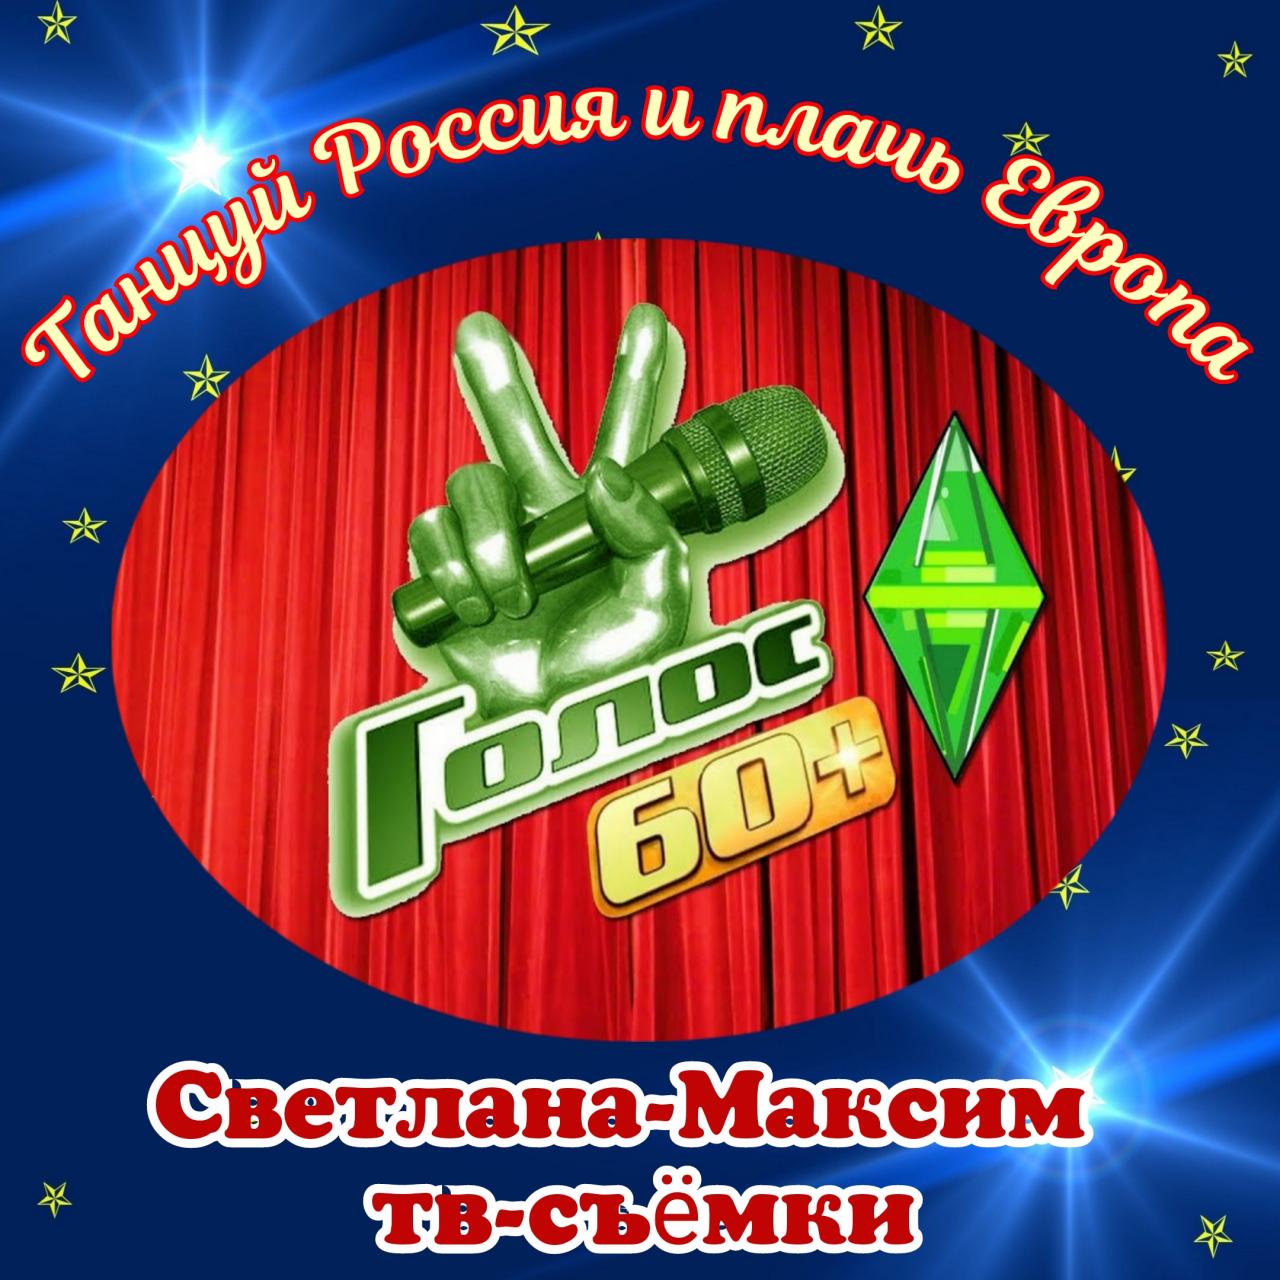 16, 17 августа музыкальное супер-шоу "ГОЛОС 60+".